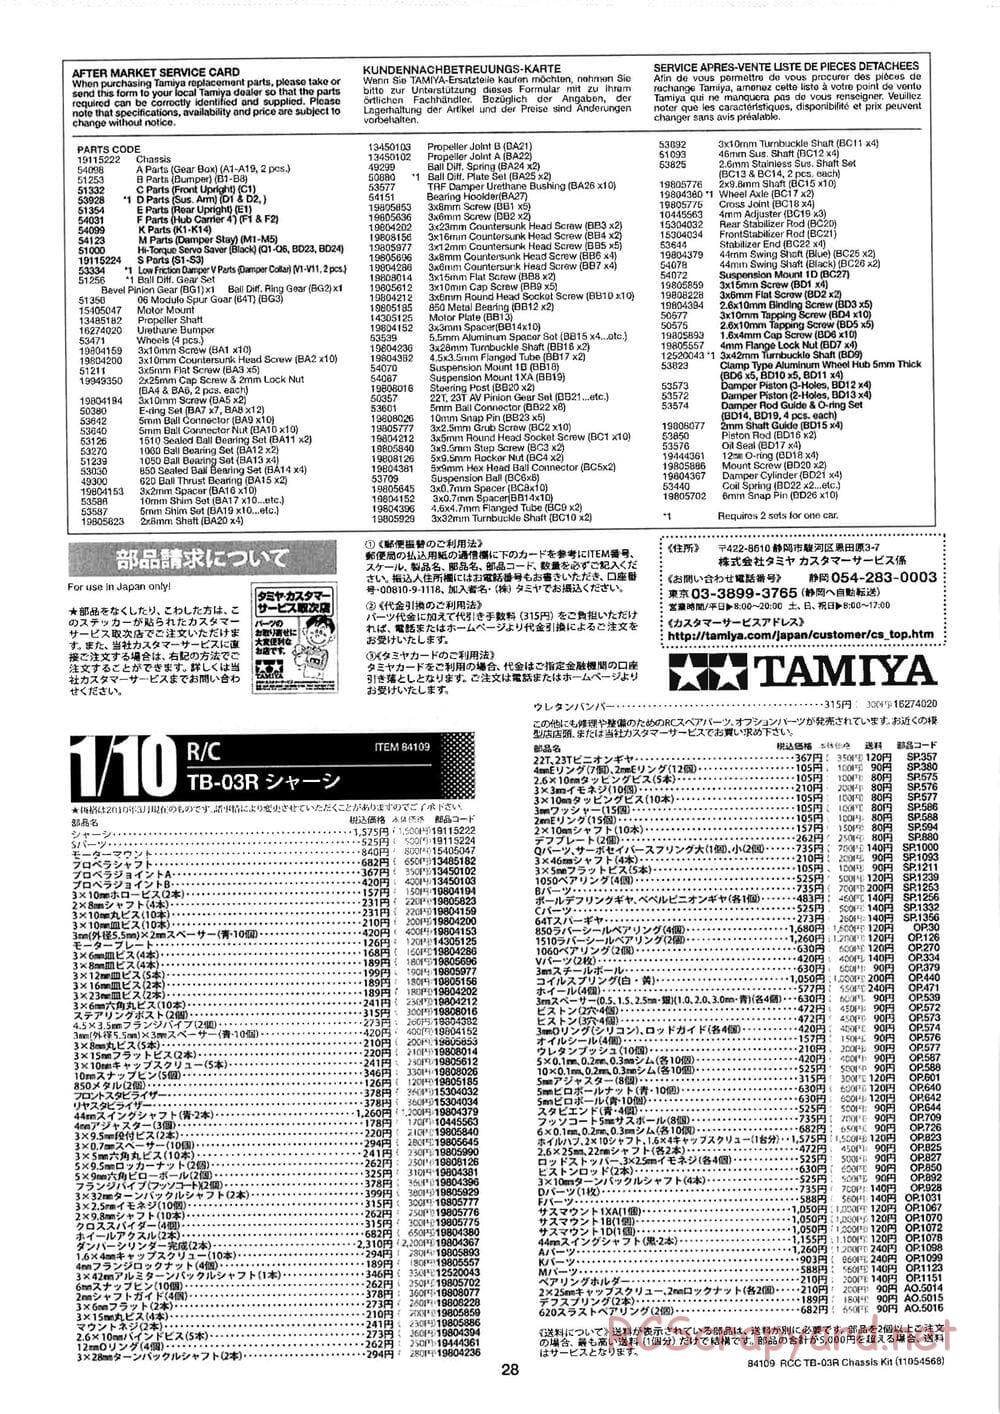 Tamiya - TB-03R Chassis - Manual - Page 28